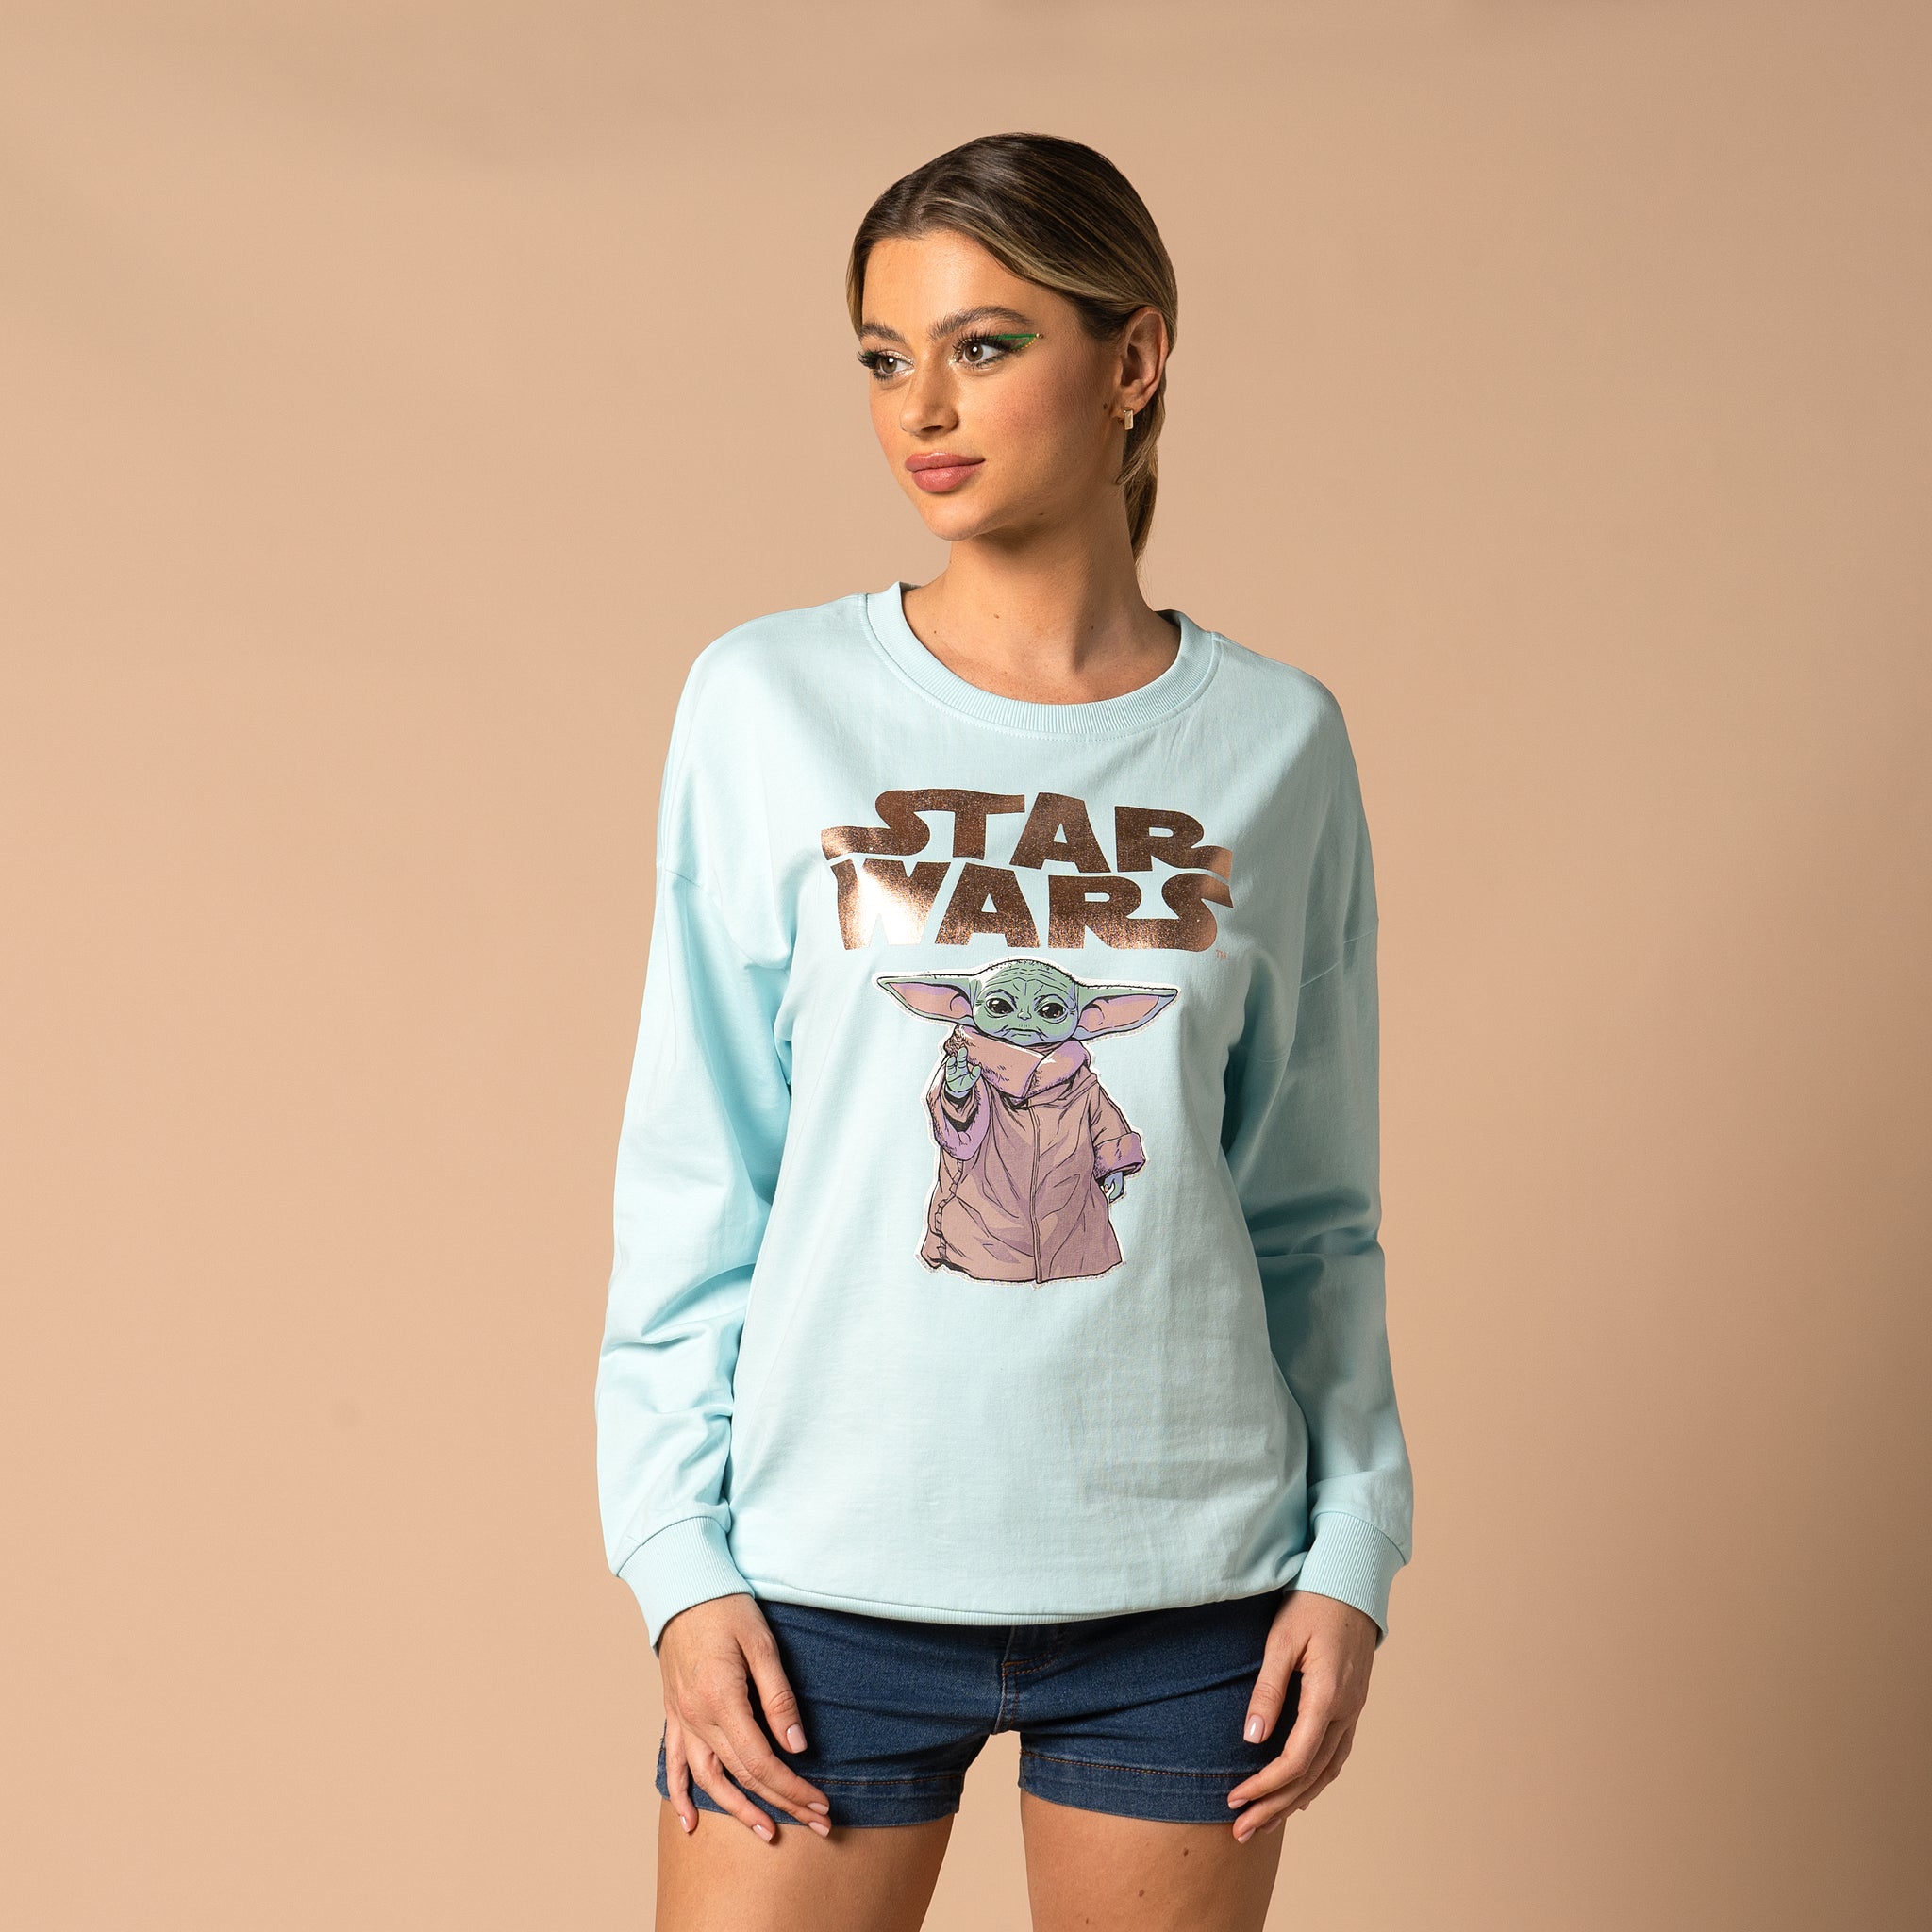 Star Wars Ladies Sweatshirt